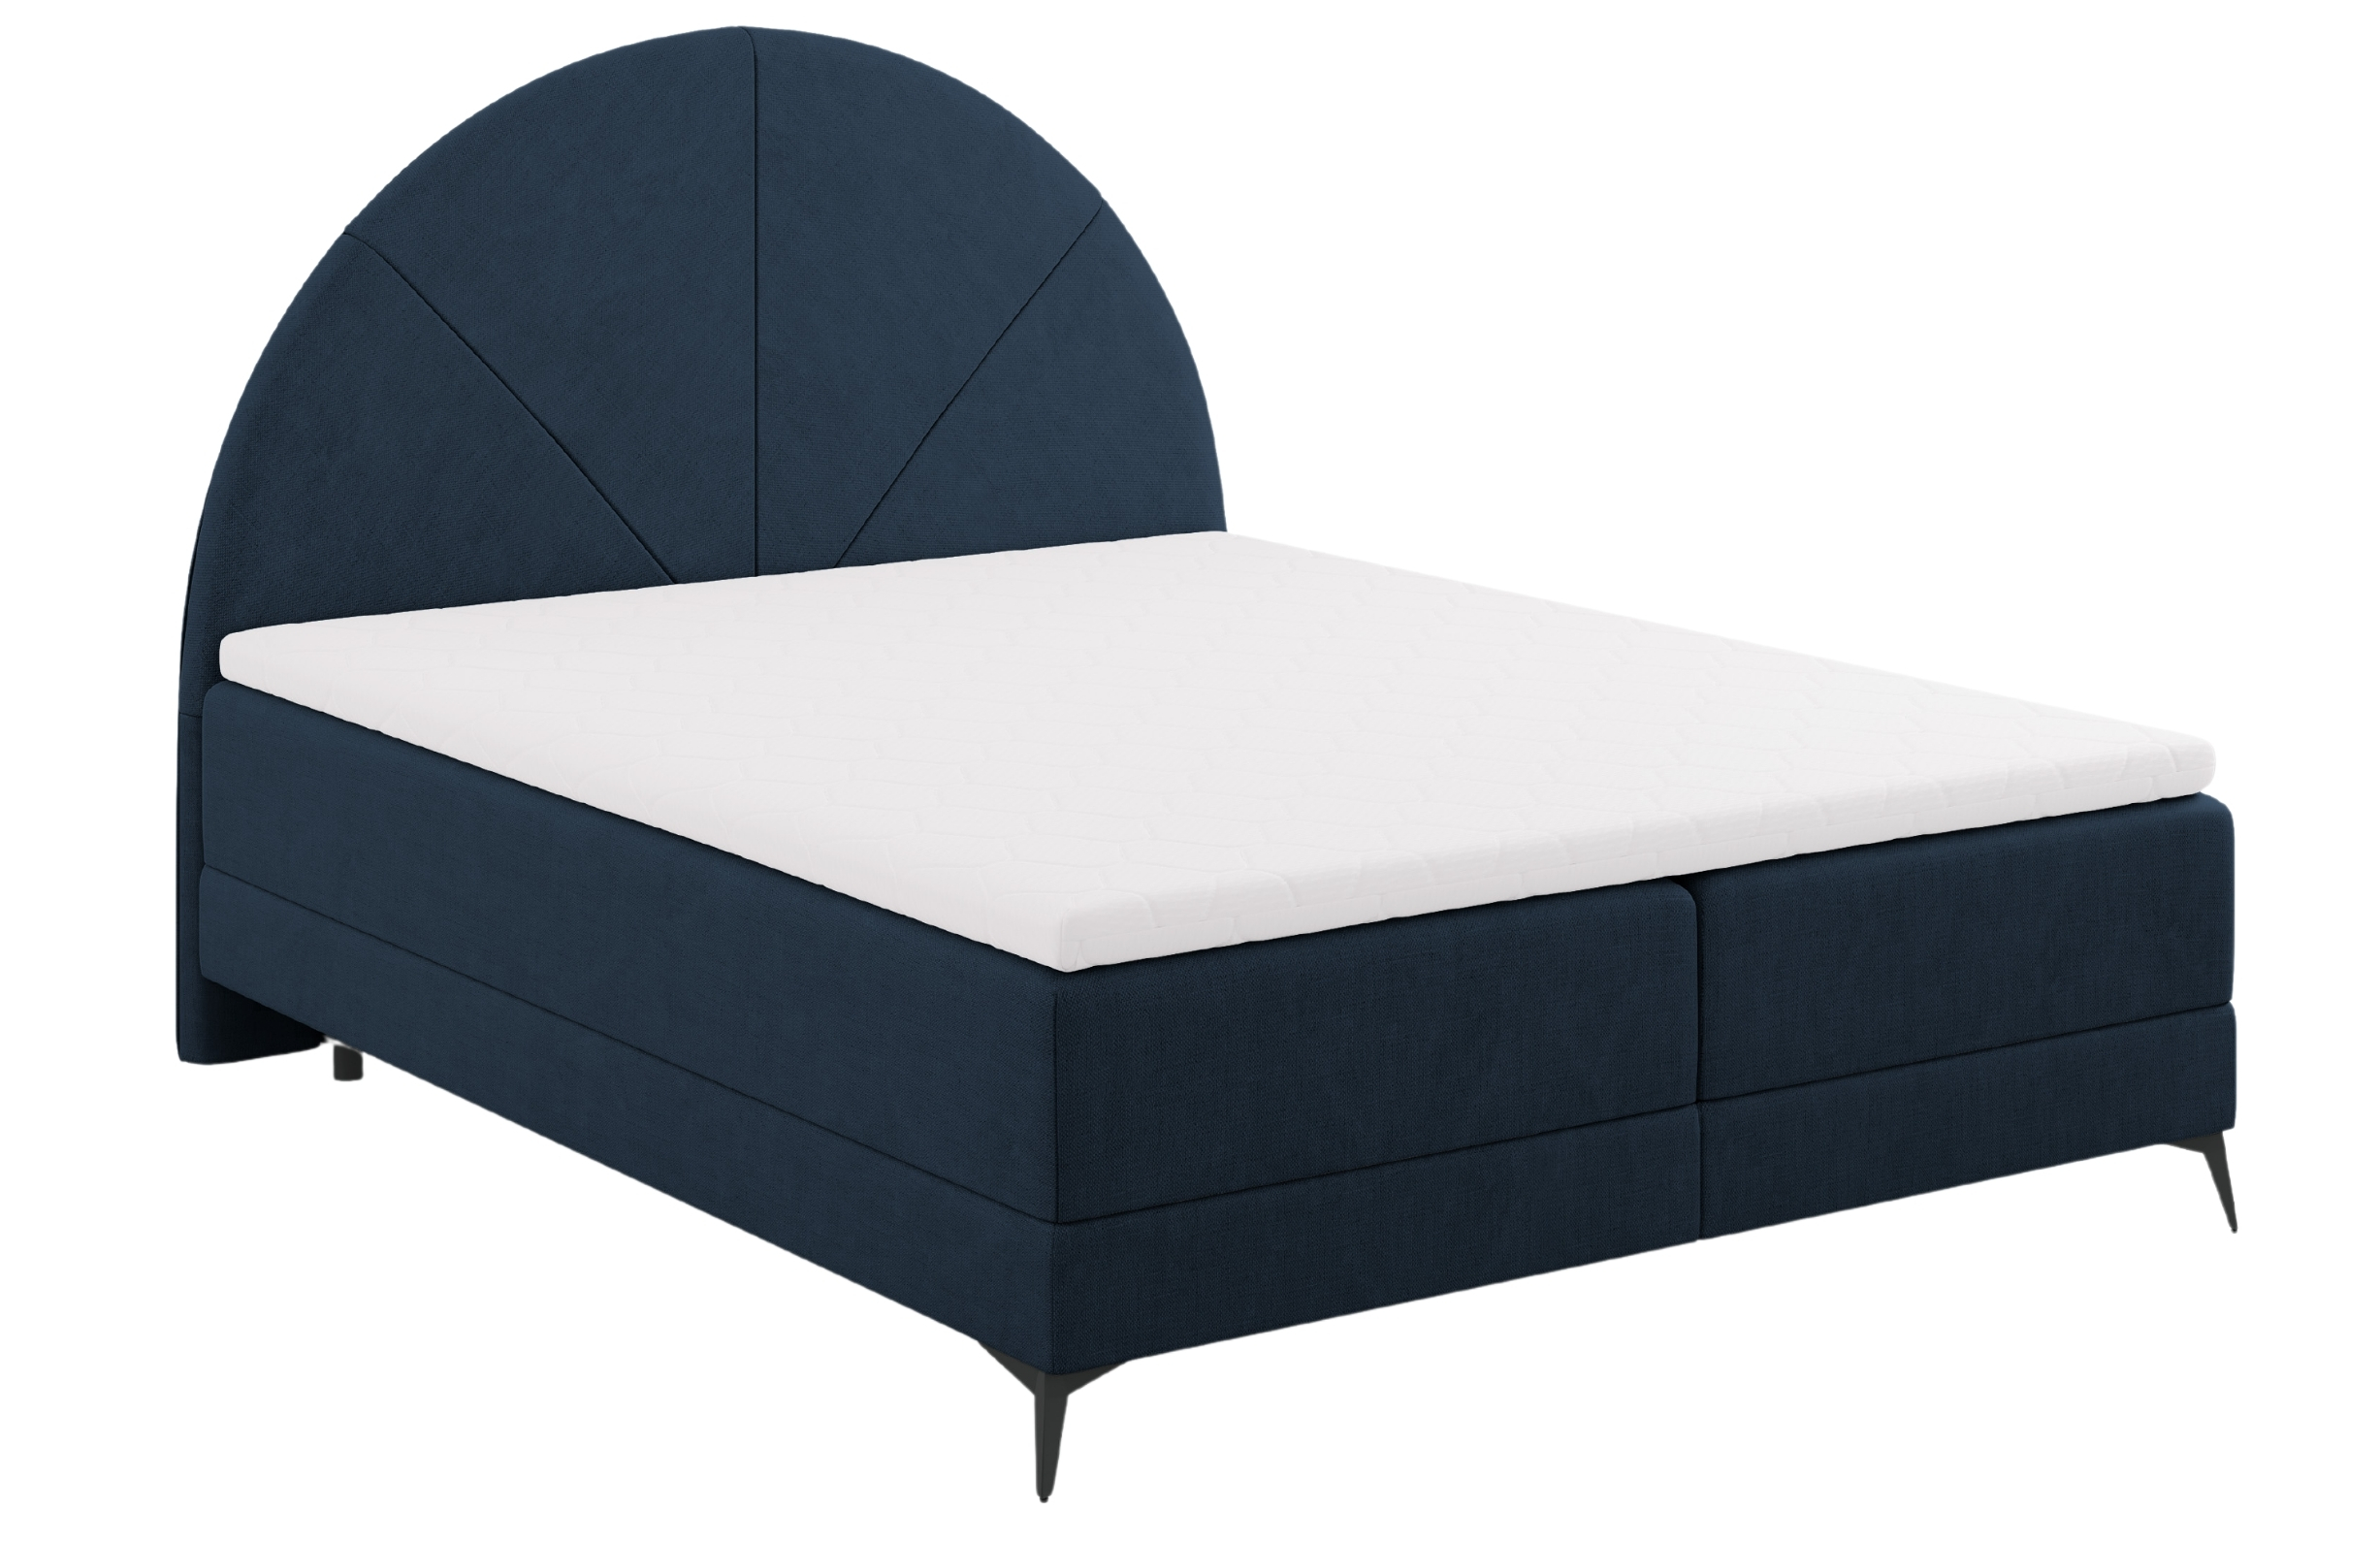 Modrá čalouněná dvoulůžková postel boxspring Cosmopolitan Design Sunset 160 x 200 cm Cosmopolitan Design